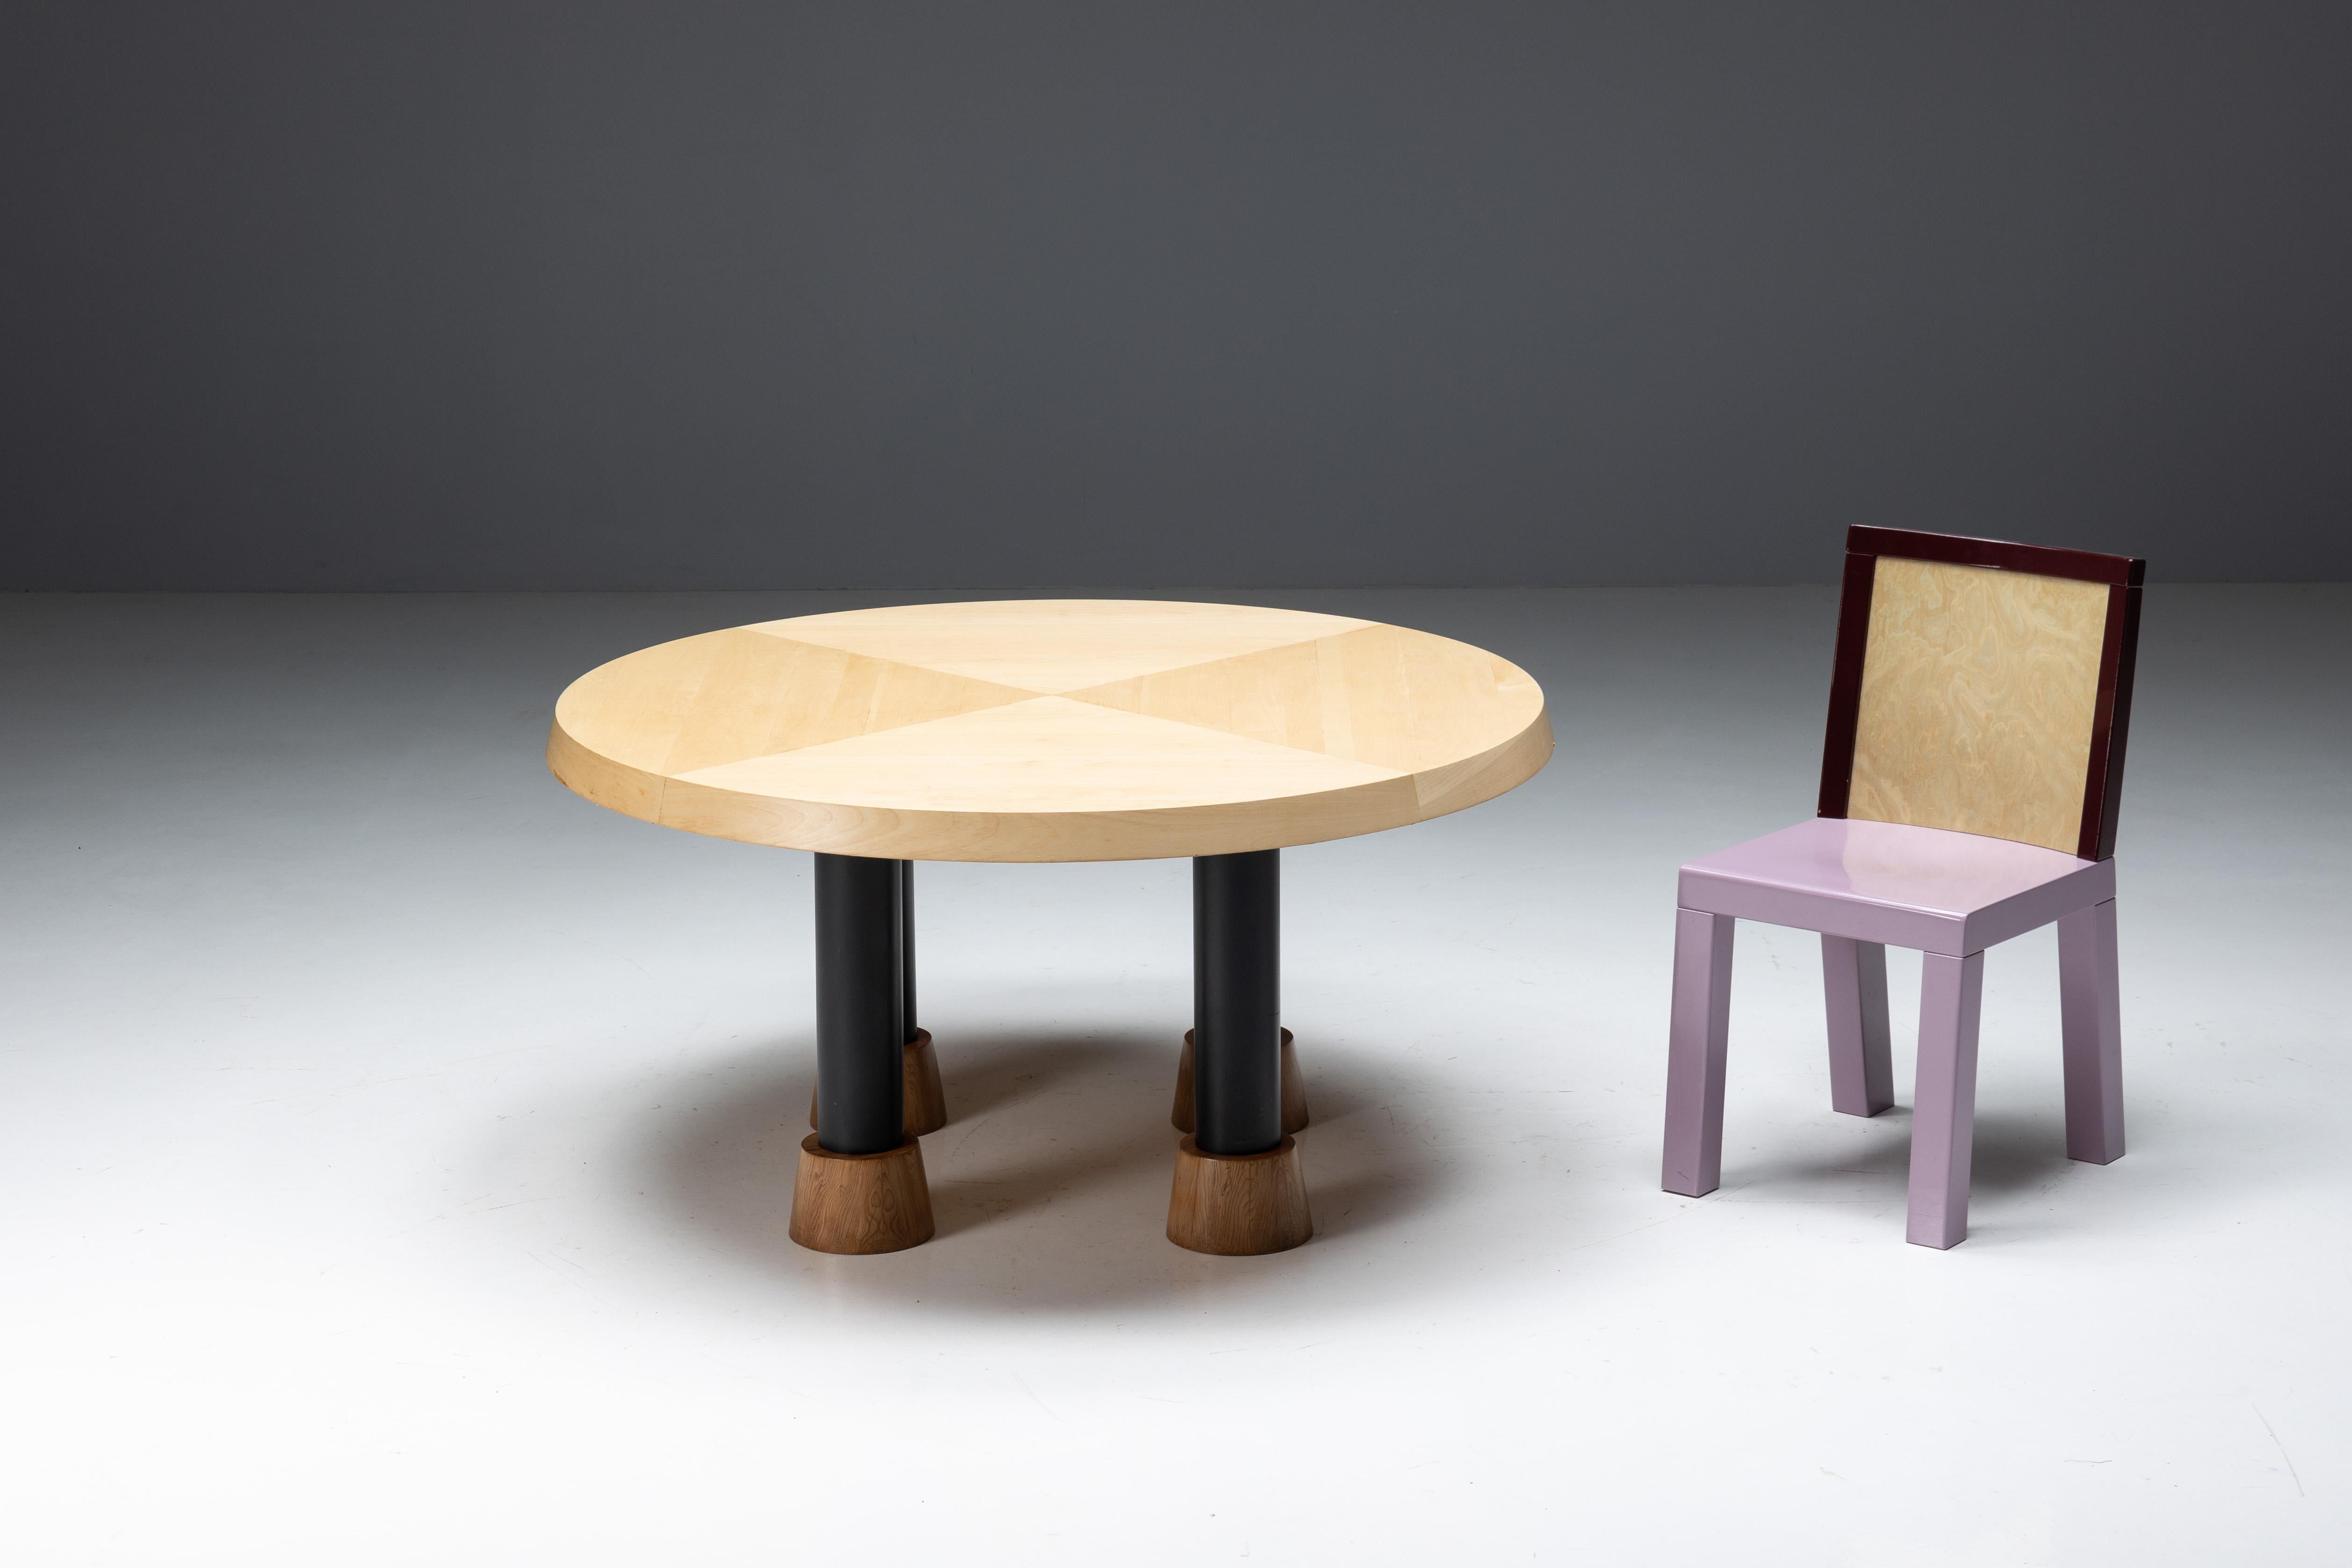 Table de salle à manger ronde conçue par Ettore Sottsass, une pièce de design postmoderne dans le style Memphis. Le plateau rond en bois massif est soutenu par quatre pieds en métal avec des bases en bois. Cette table trouve un équilibre harmonieux